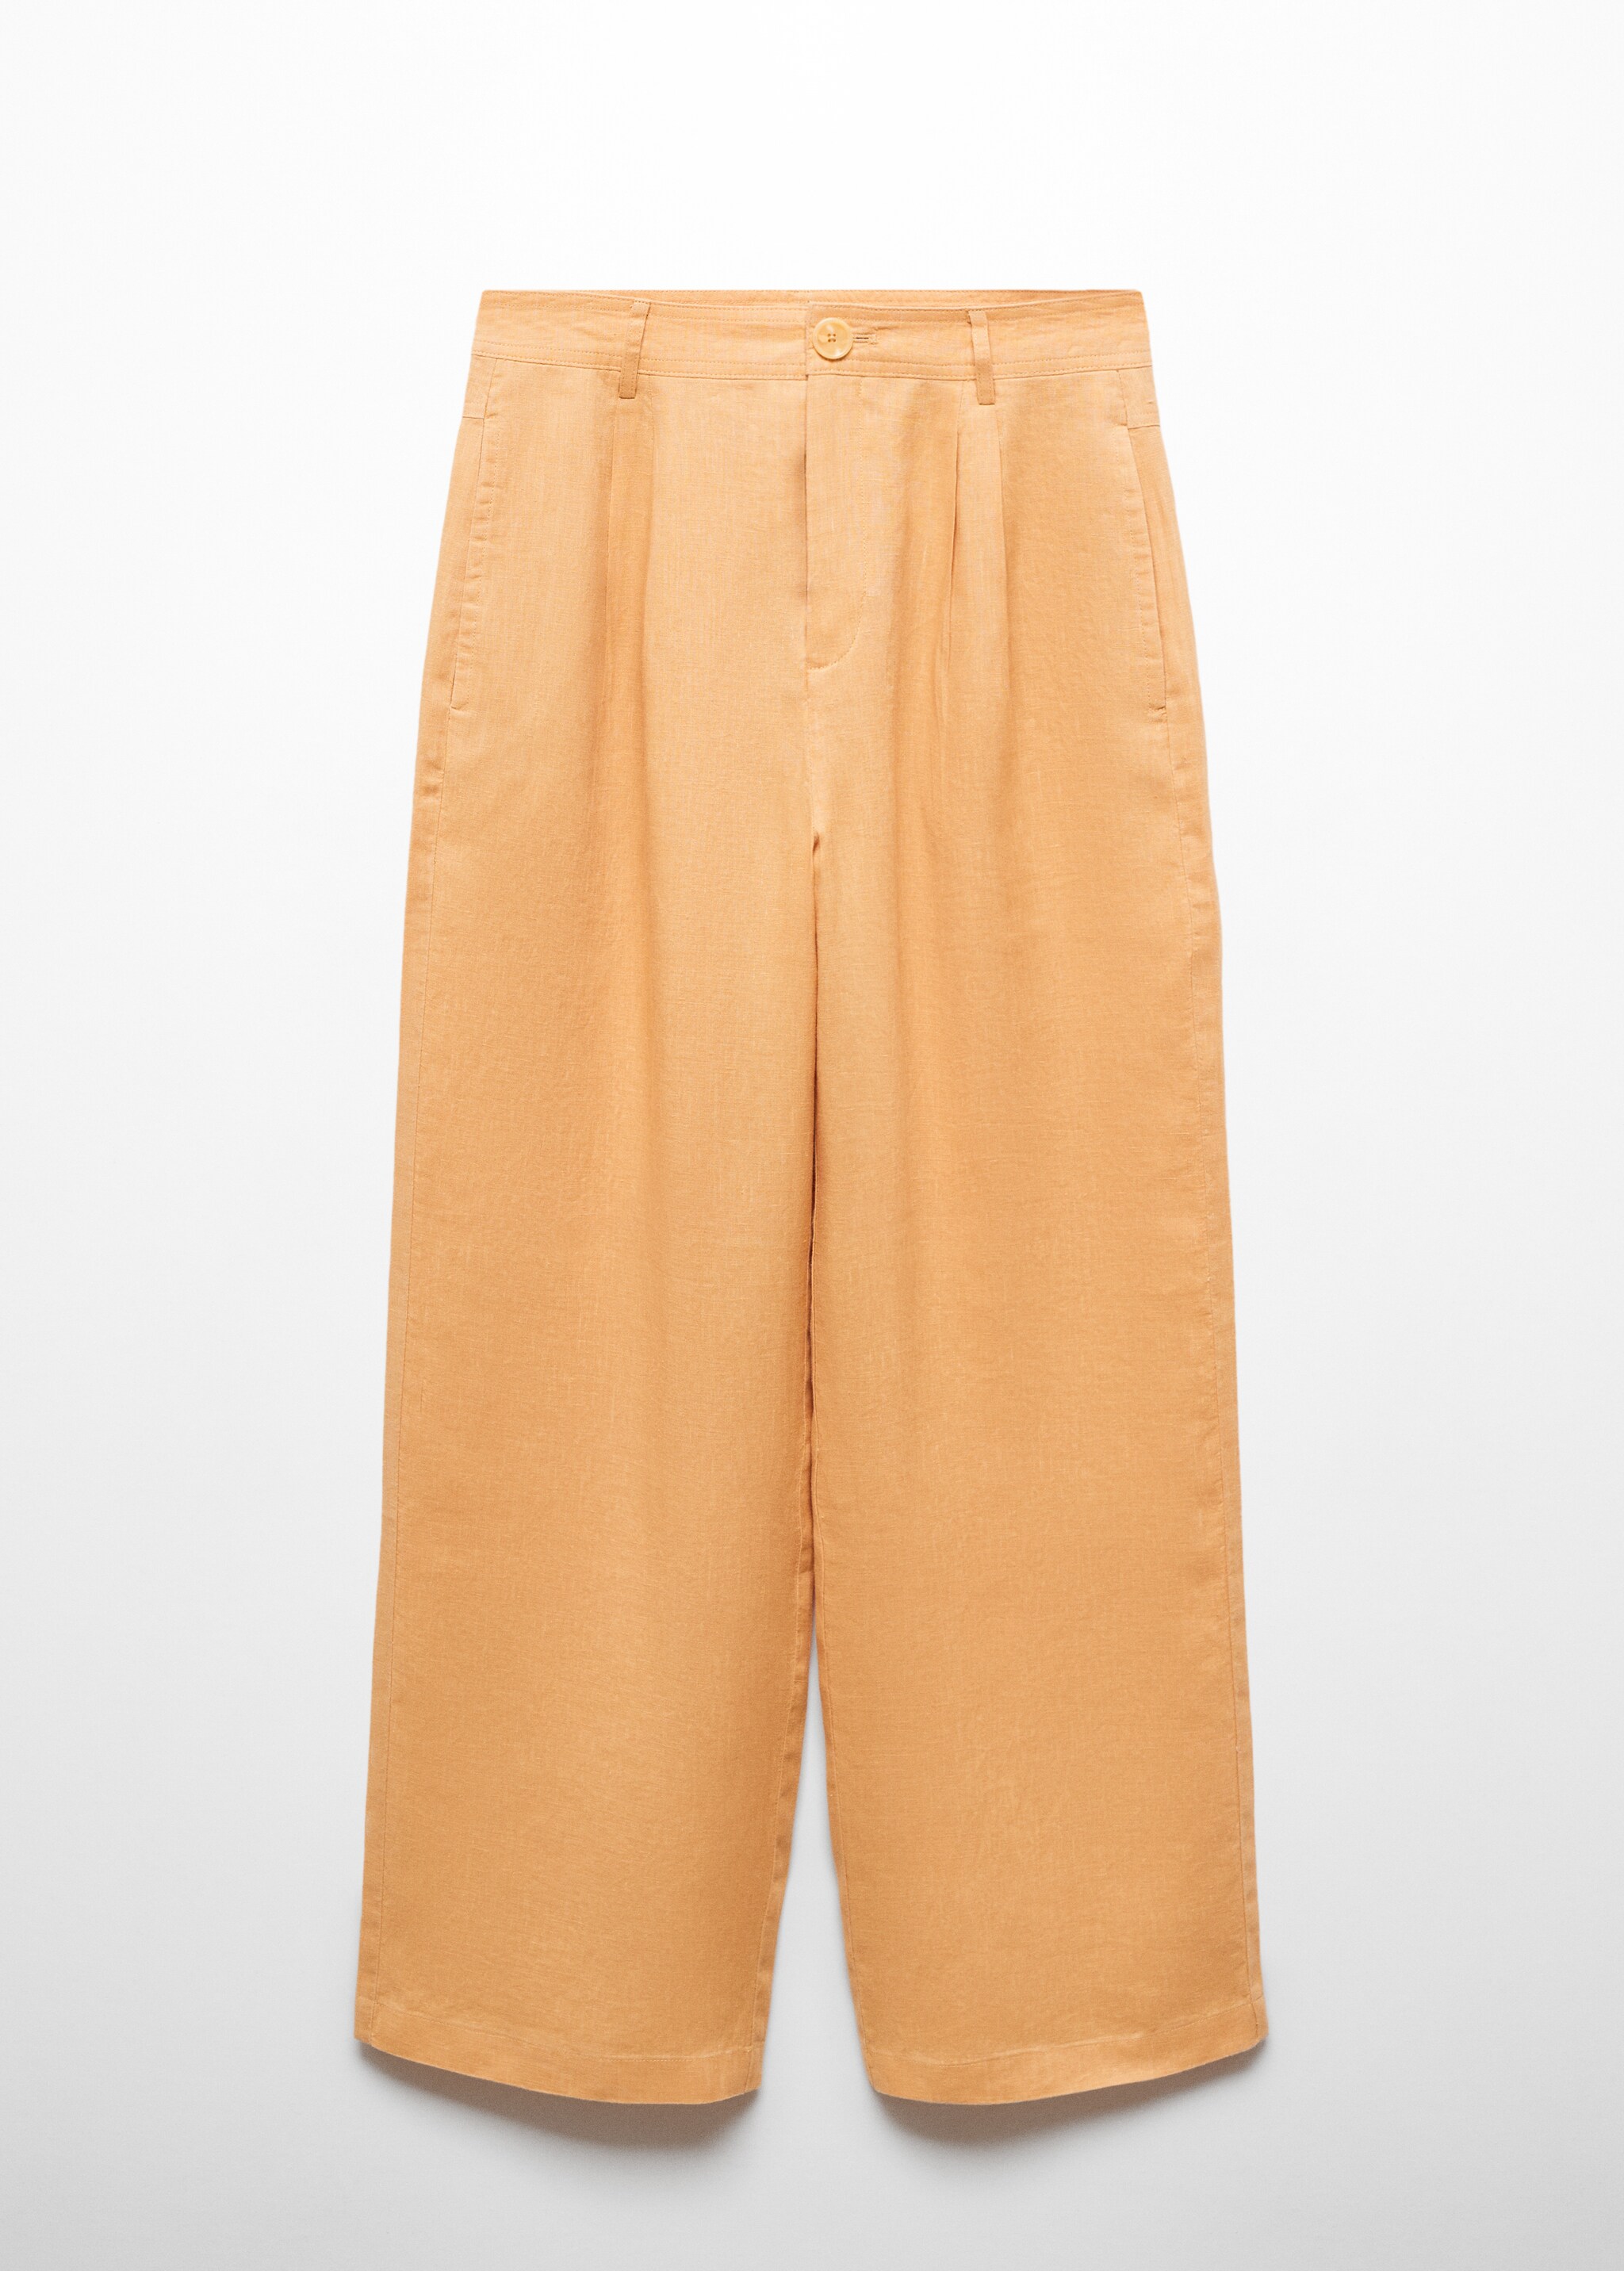 Pantaloni wideleg 100% lino - Articolo senza modello